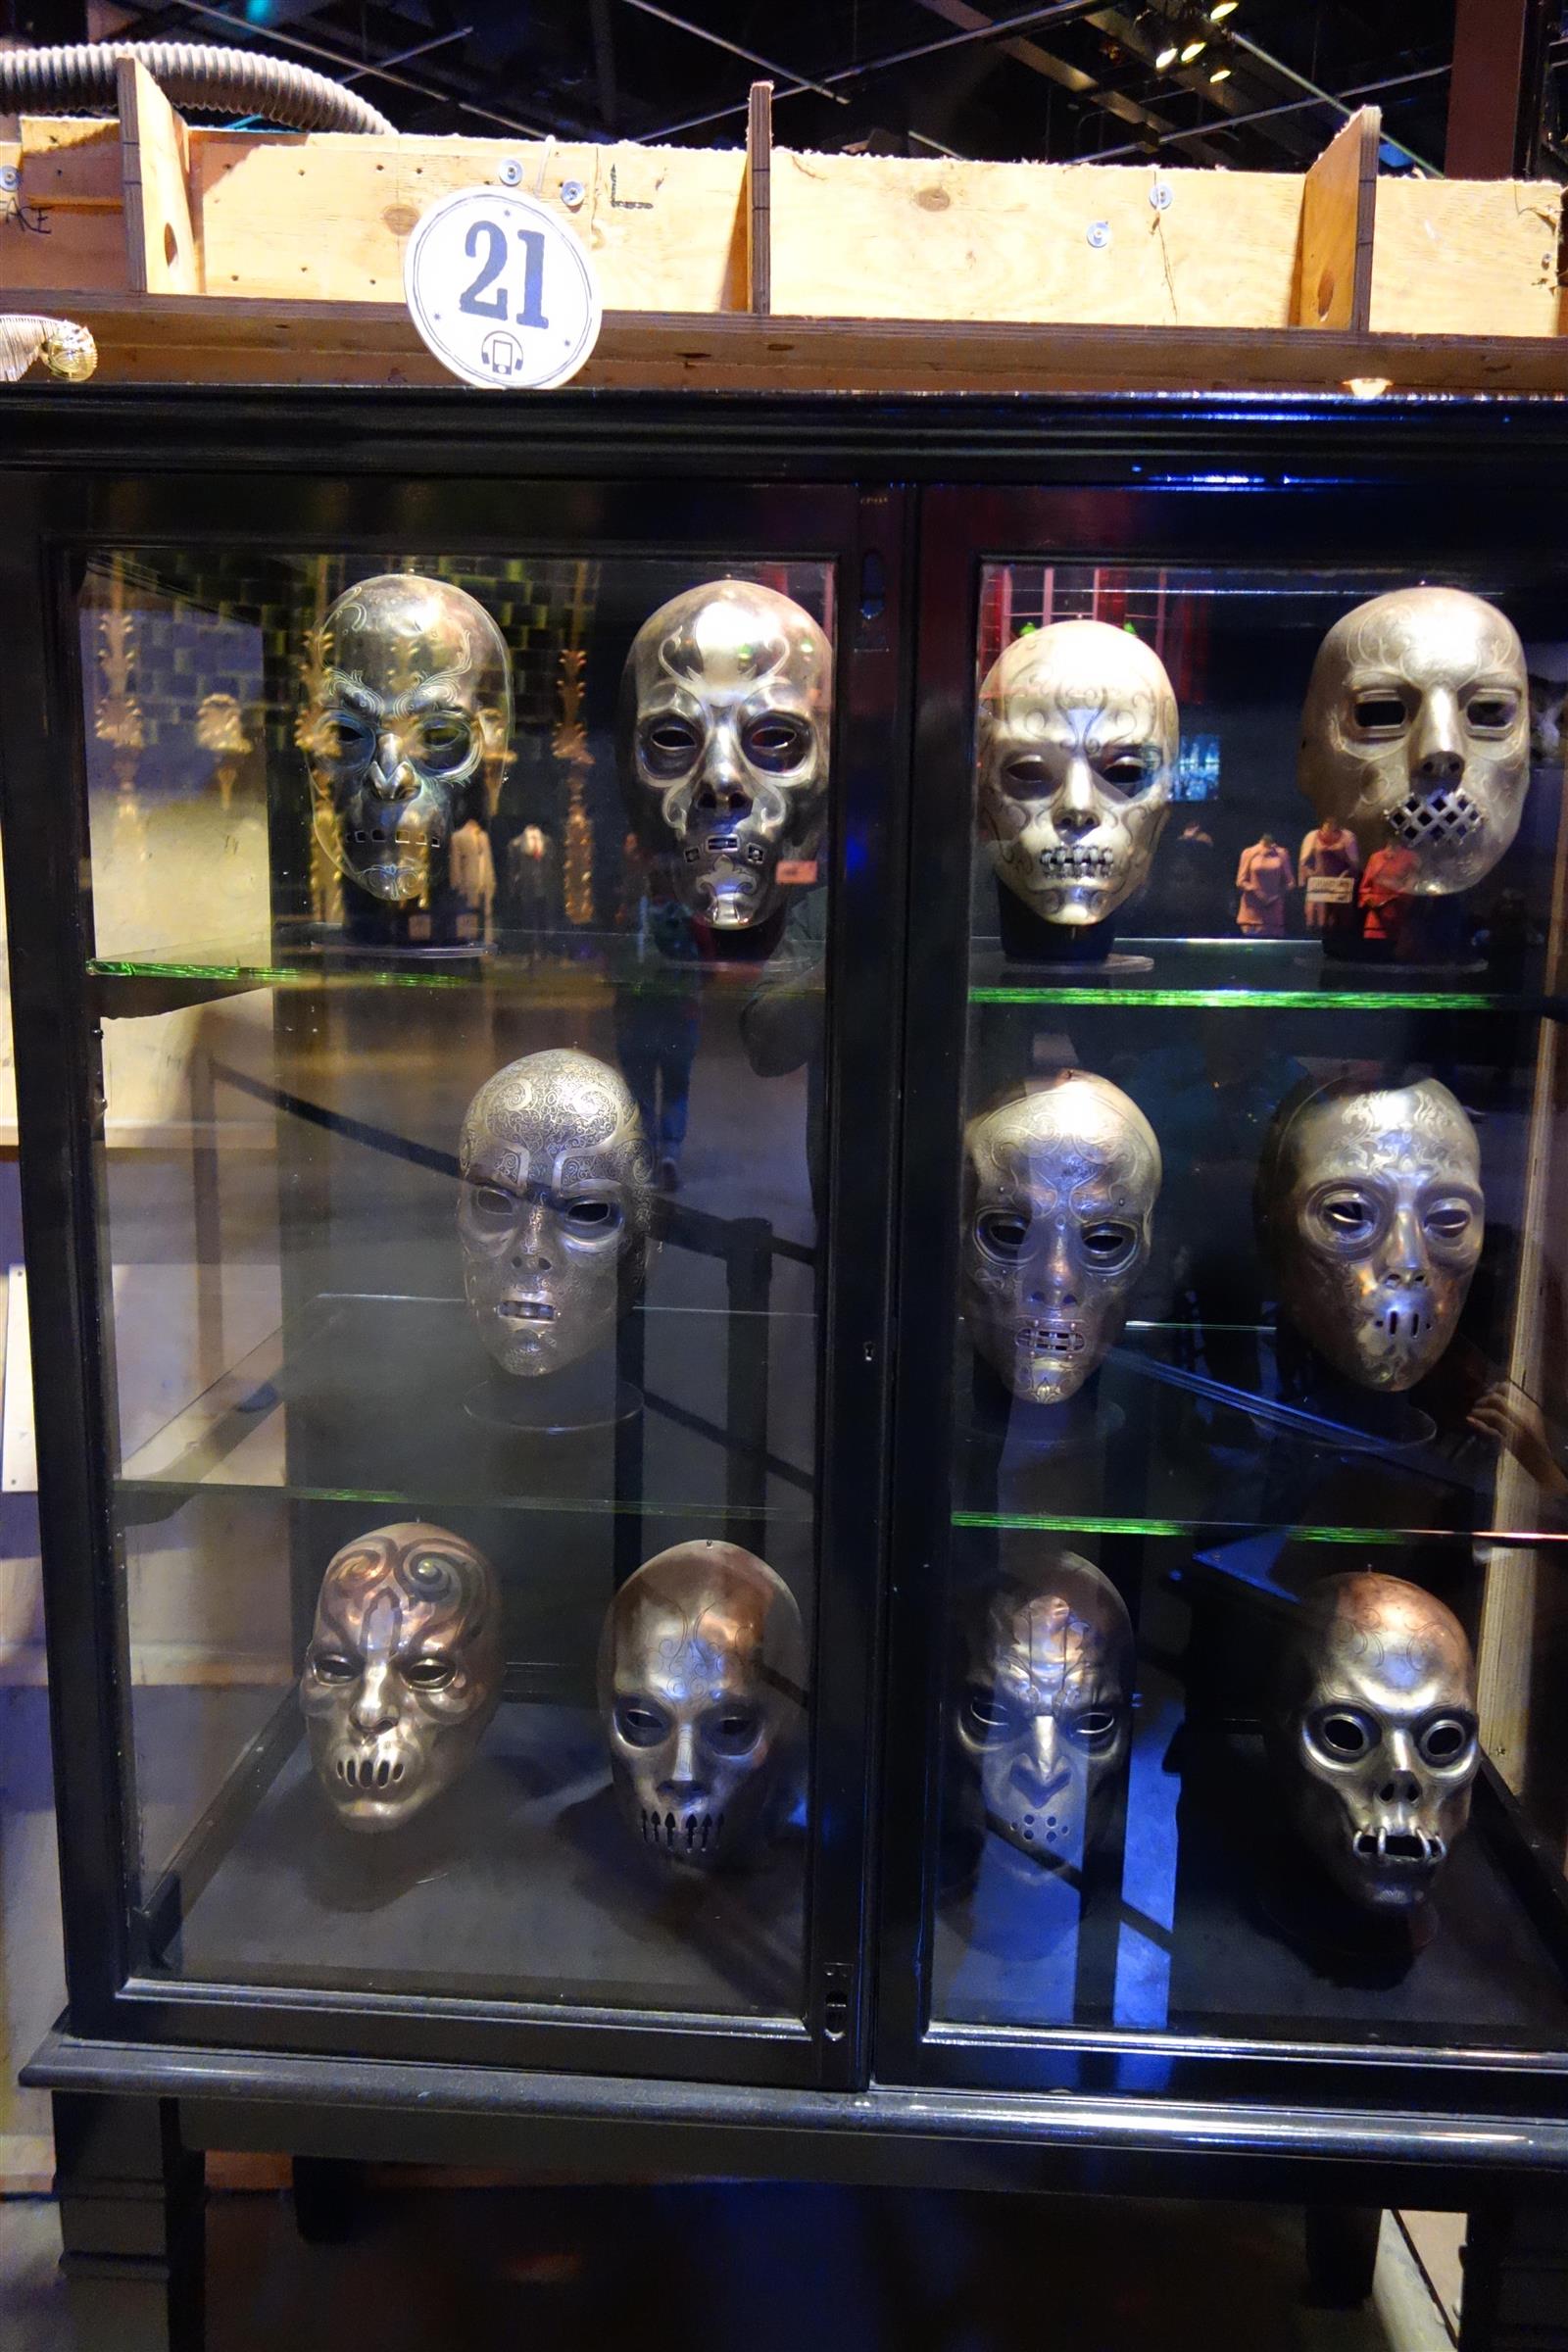 54. Deatheater Masks